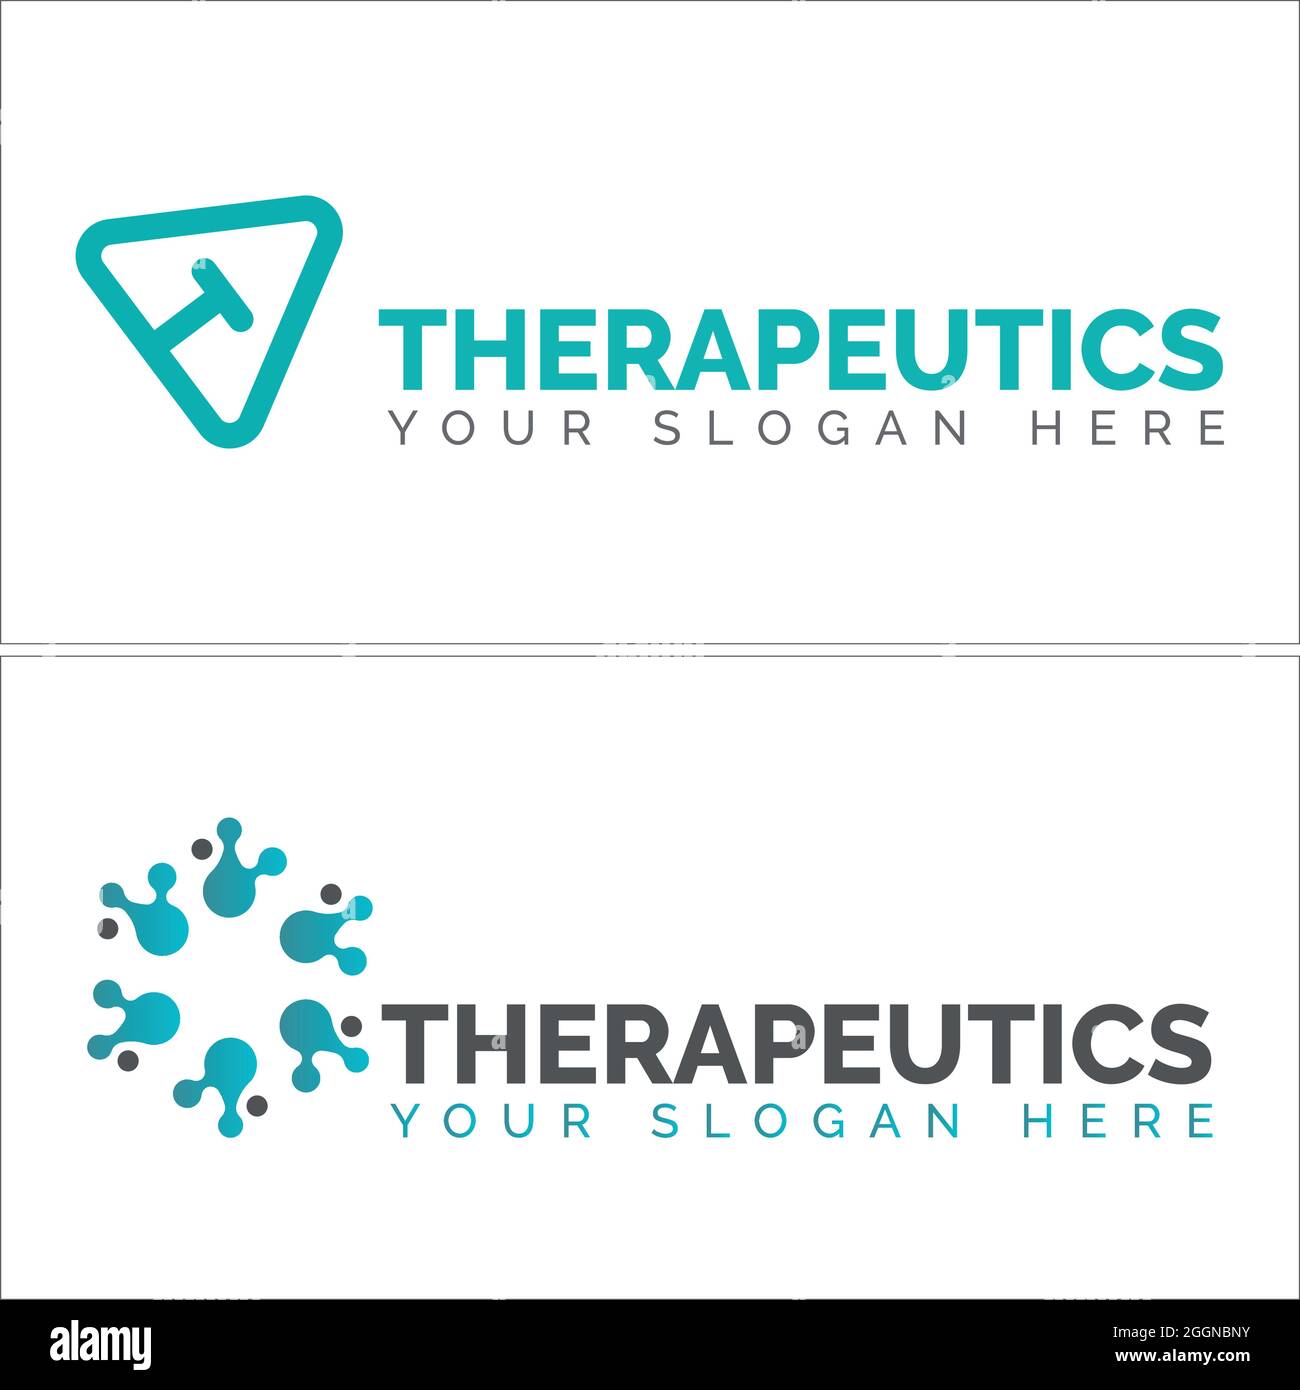 Therapeutics clinic biotech logo design Stock Vector